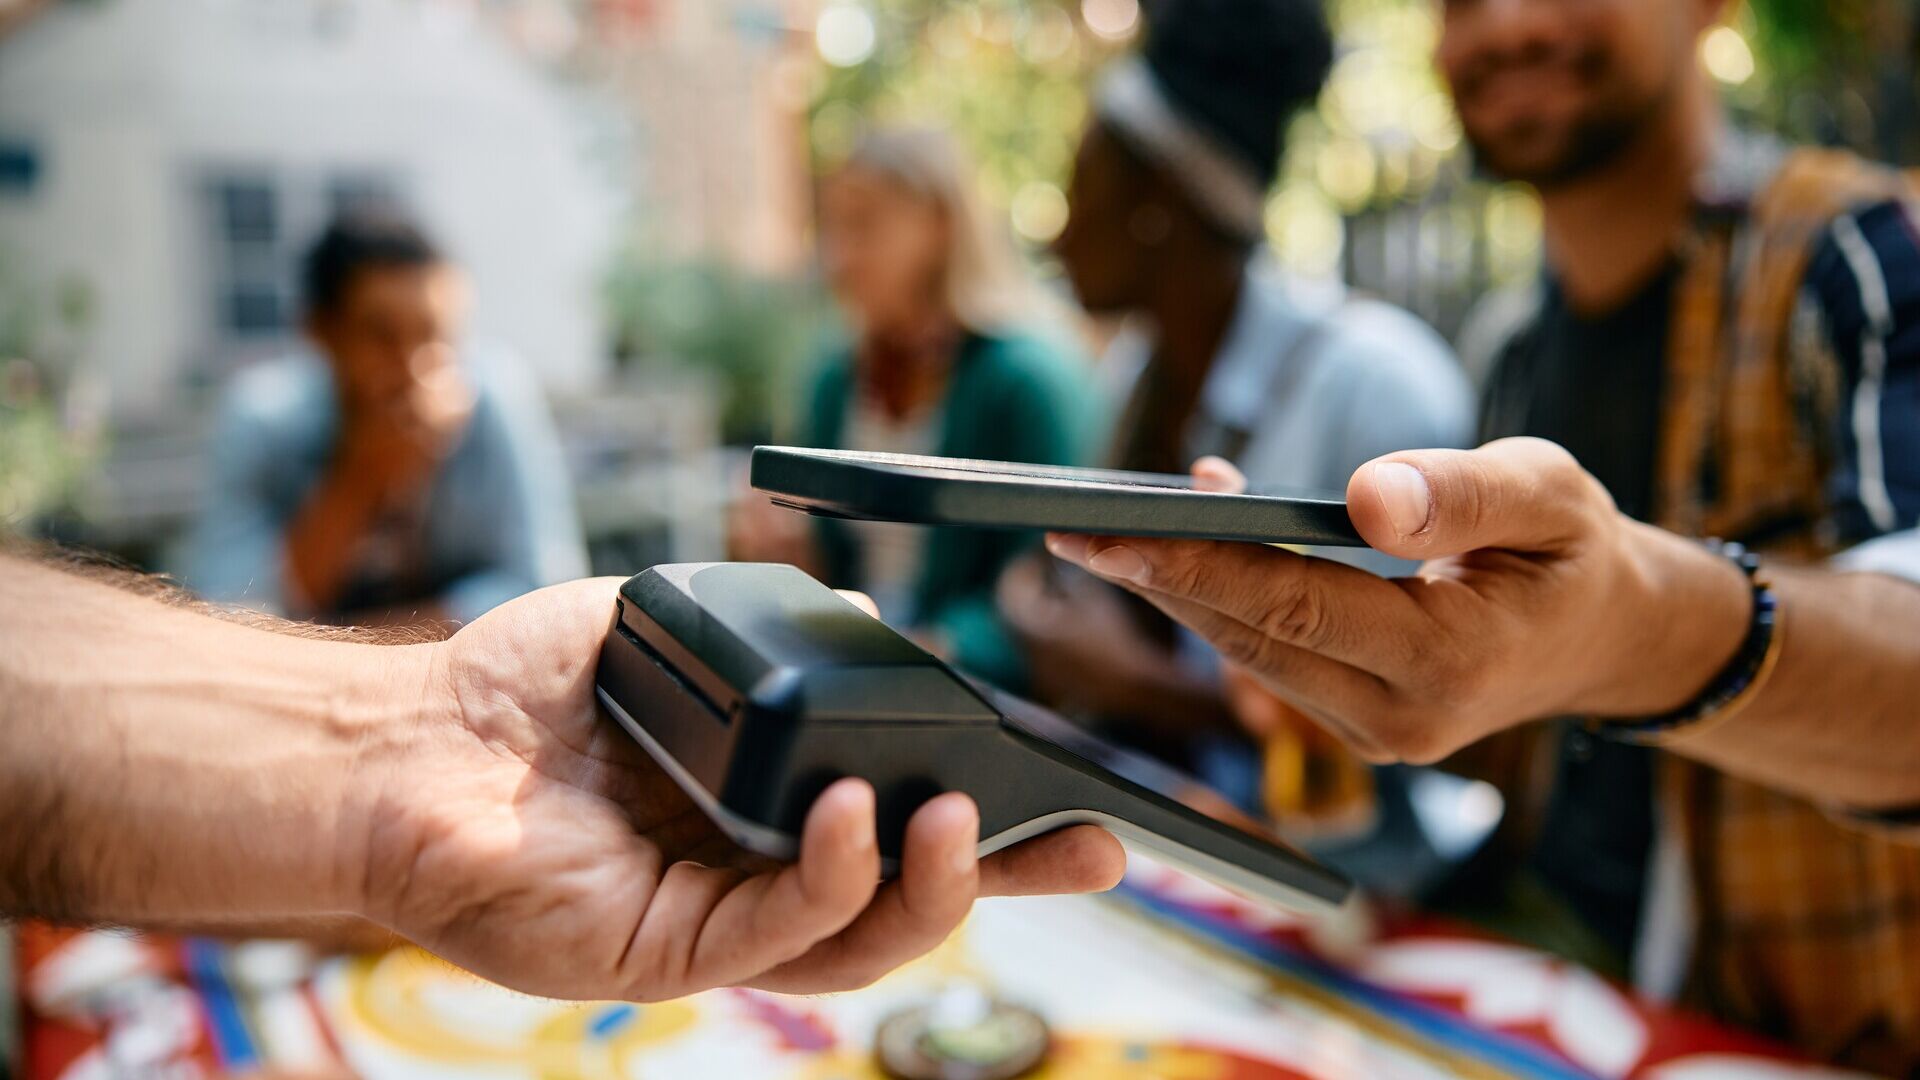 मोबाइल भुगतान: चीन या संयुक्त राज्य अमेरिका जैसे देशों की तुलना में, जर्मनी के संघीय गणराज्य में मोबाइल भुगतान के लिए बुनियादी ढांचा पर्याप्त रूप से विकसित नहीं है।